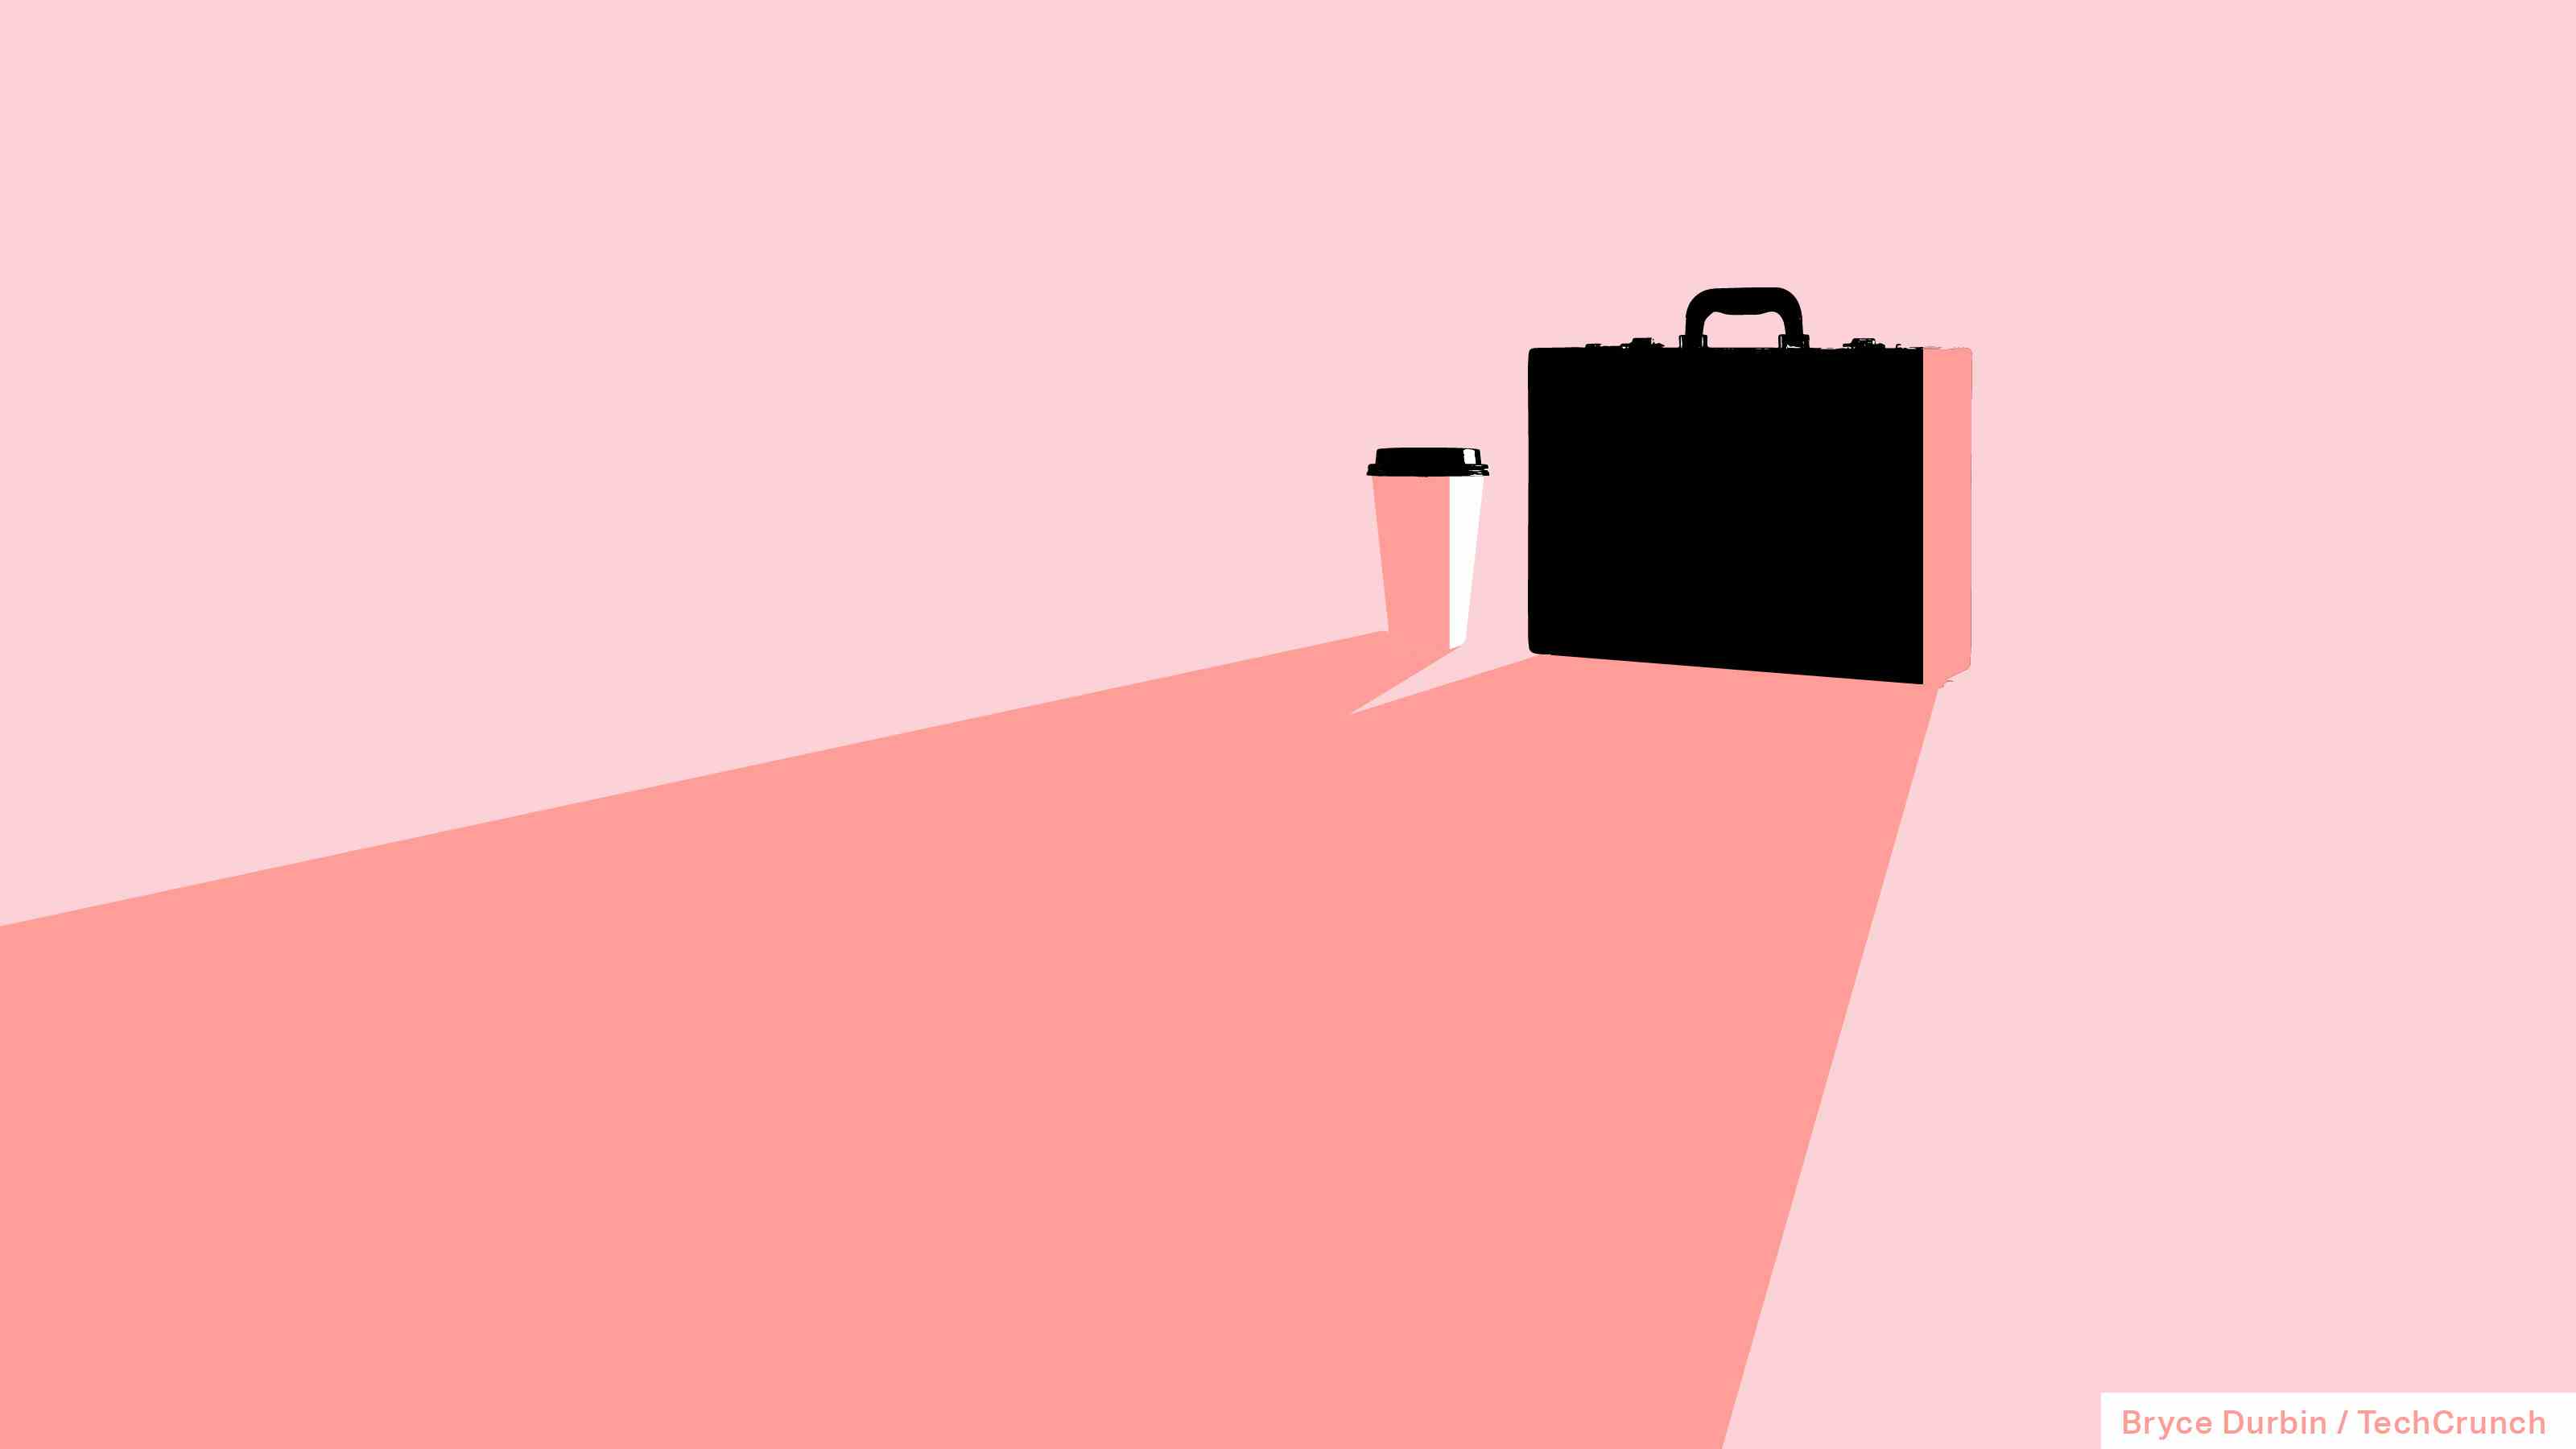 Eine Tasse Kaffee und eine Aktentasche in tausendjährigem Pink, um den Aufstieg der "Mädchenboss" Begriff.